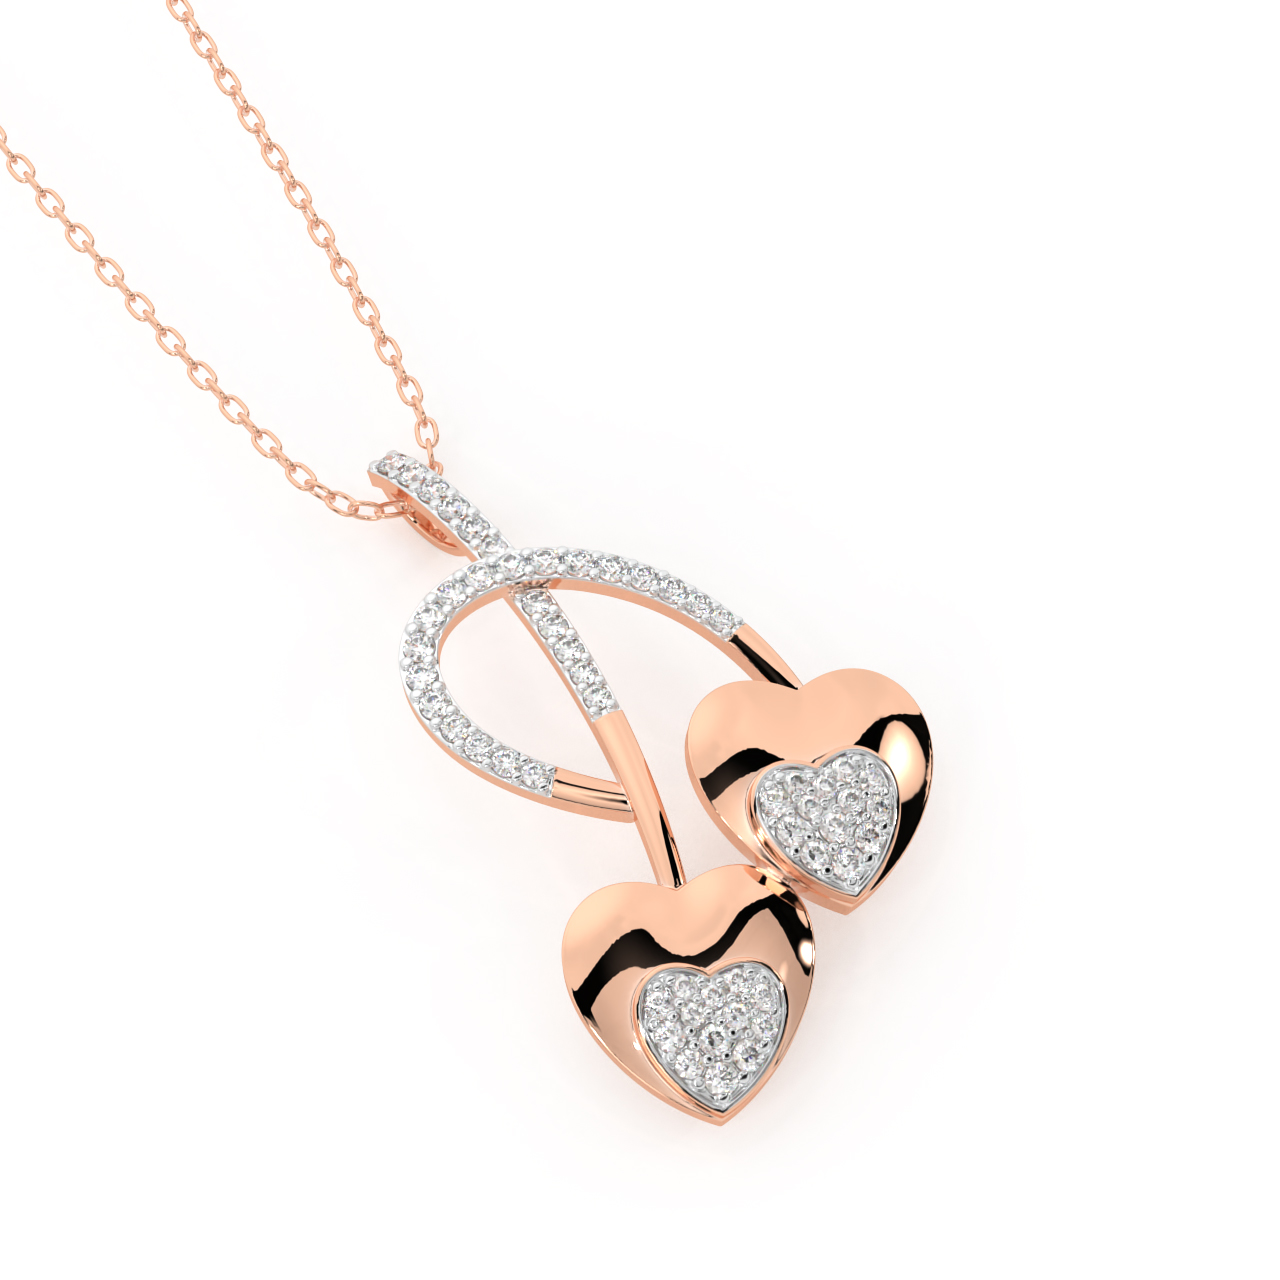 Twin Heart Diamond Pendant in Heart Shape